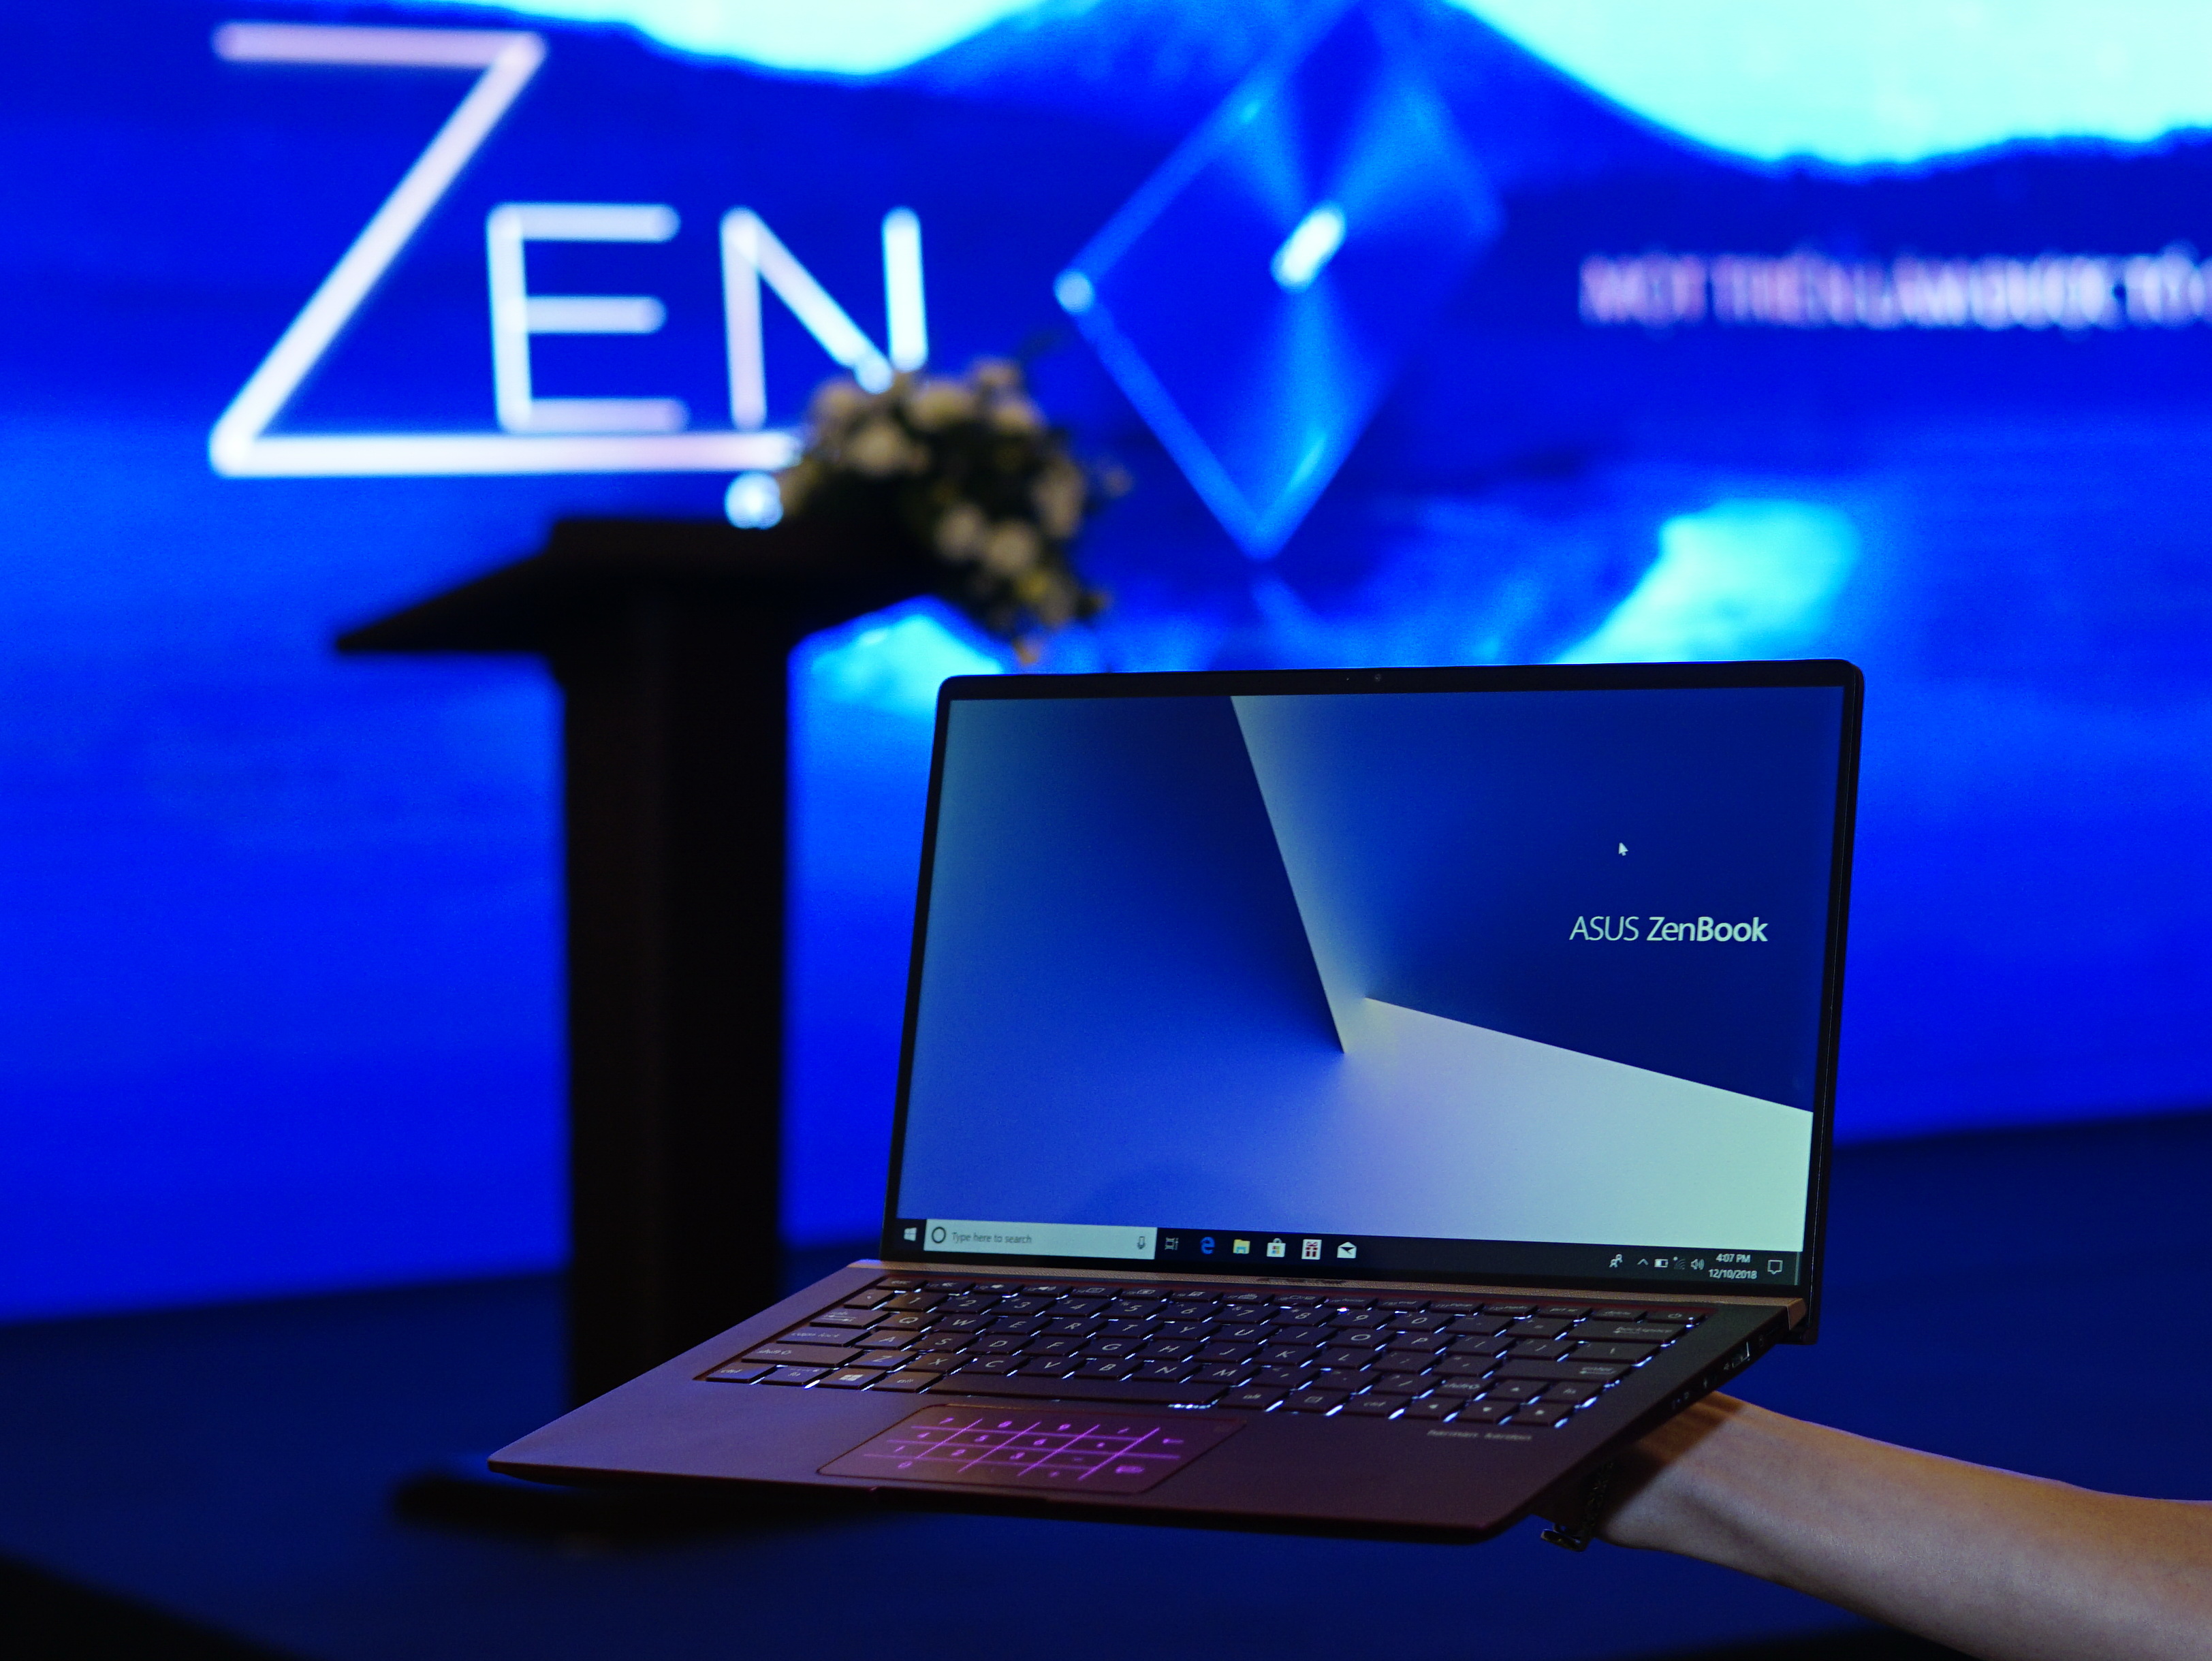 Loạt laptop siêu mỏng nhẹ ASUS ZenBook thế hệ mới: Đẹp, giá hấp dẫn